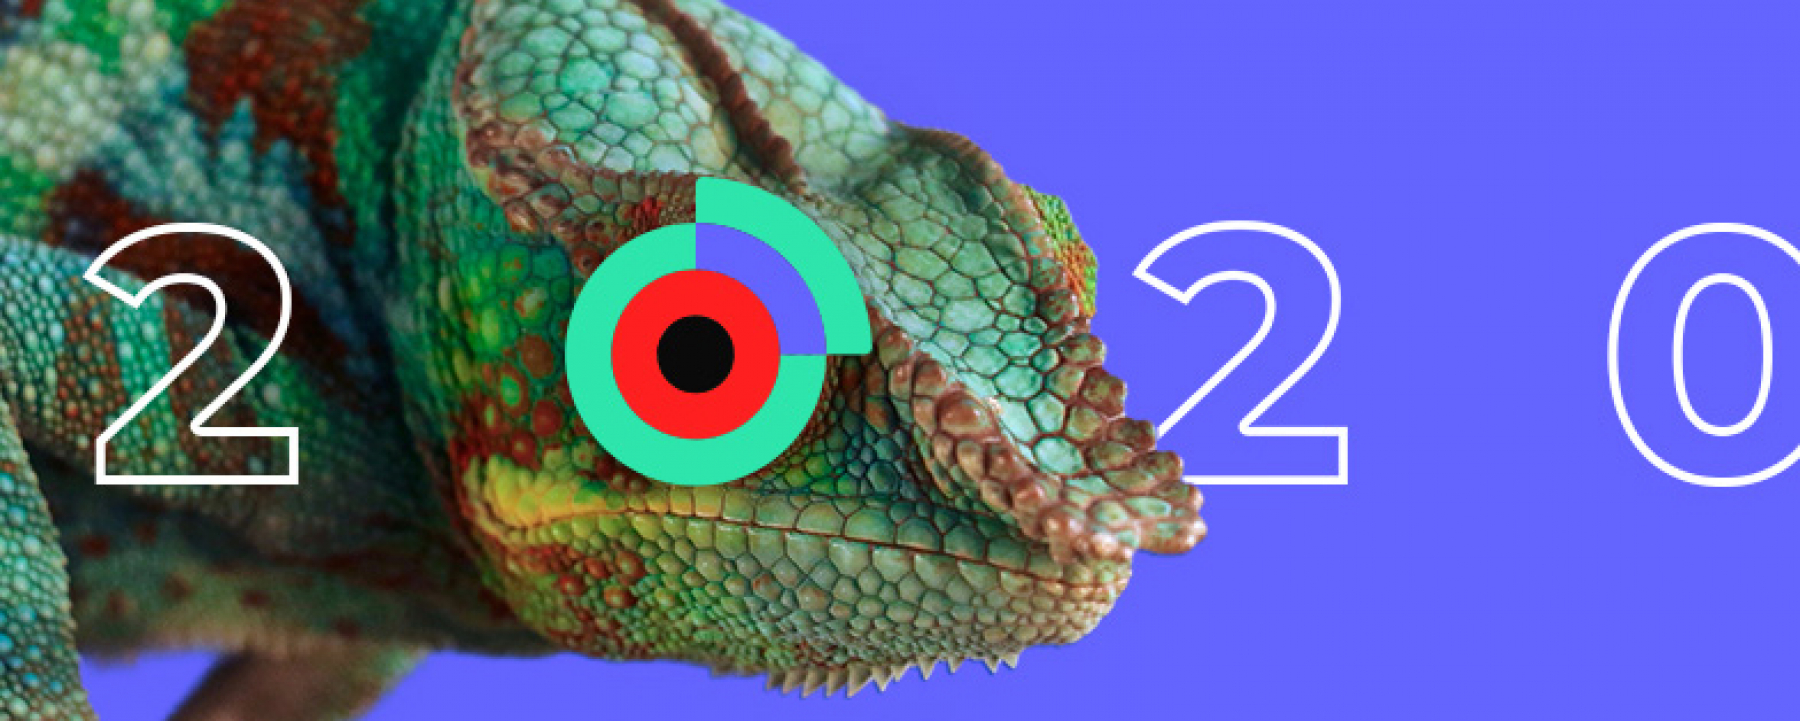 Meet-up : E-Commerce & Retail, organisé par Kameleoon, le 27 février 2020